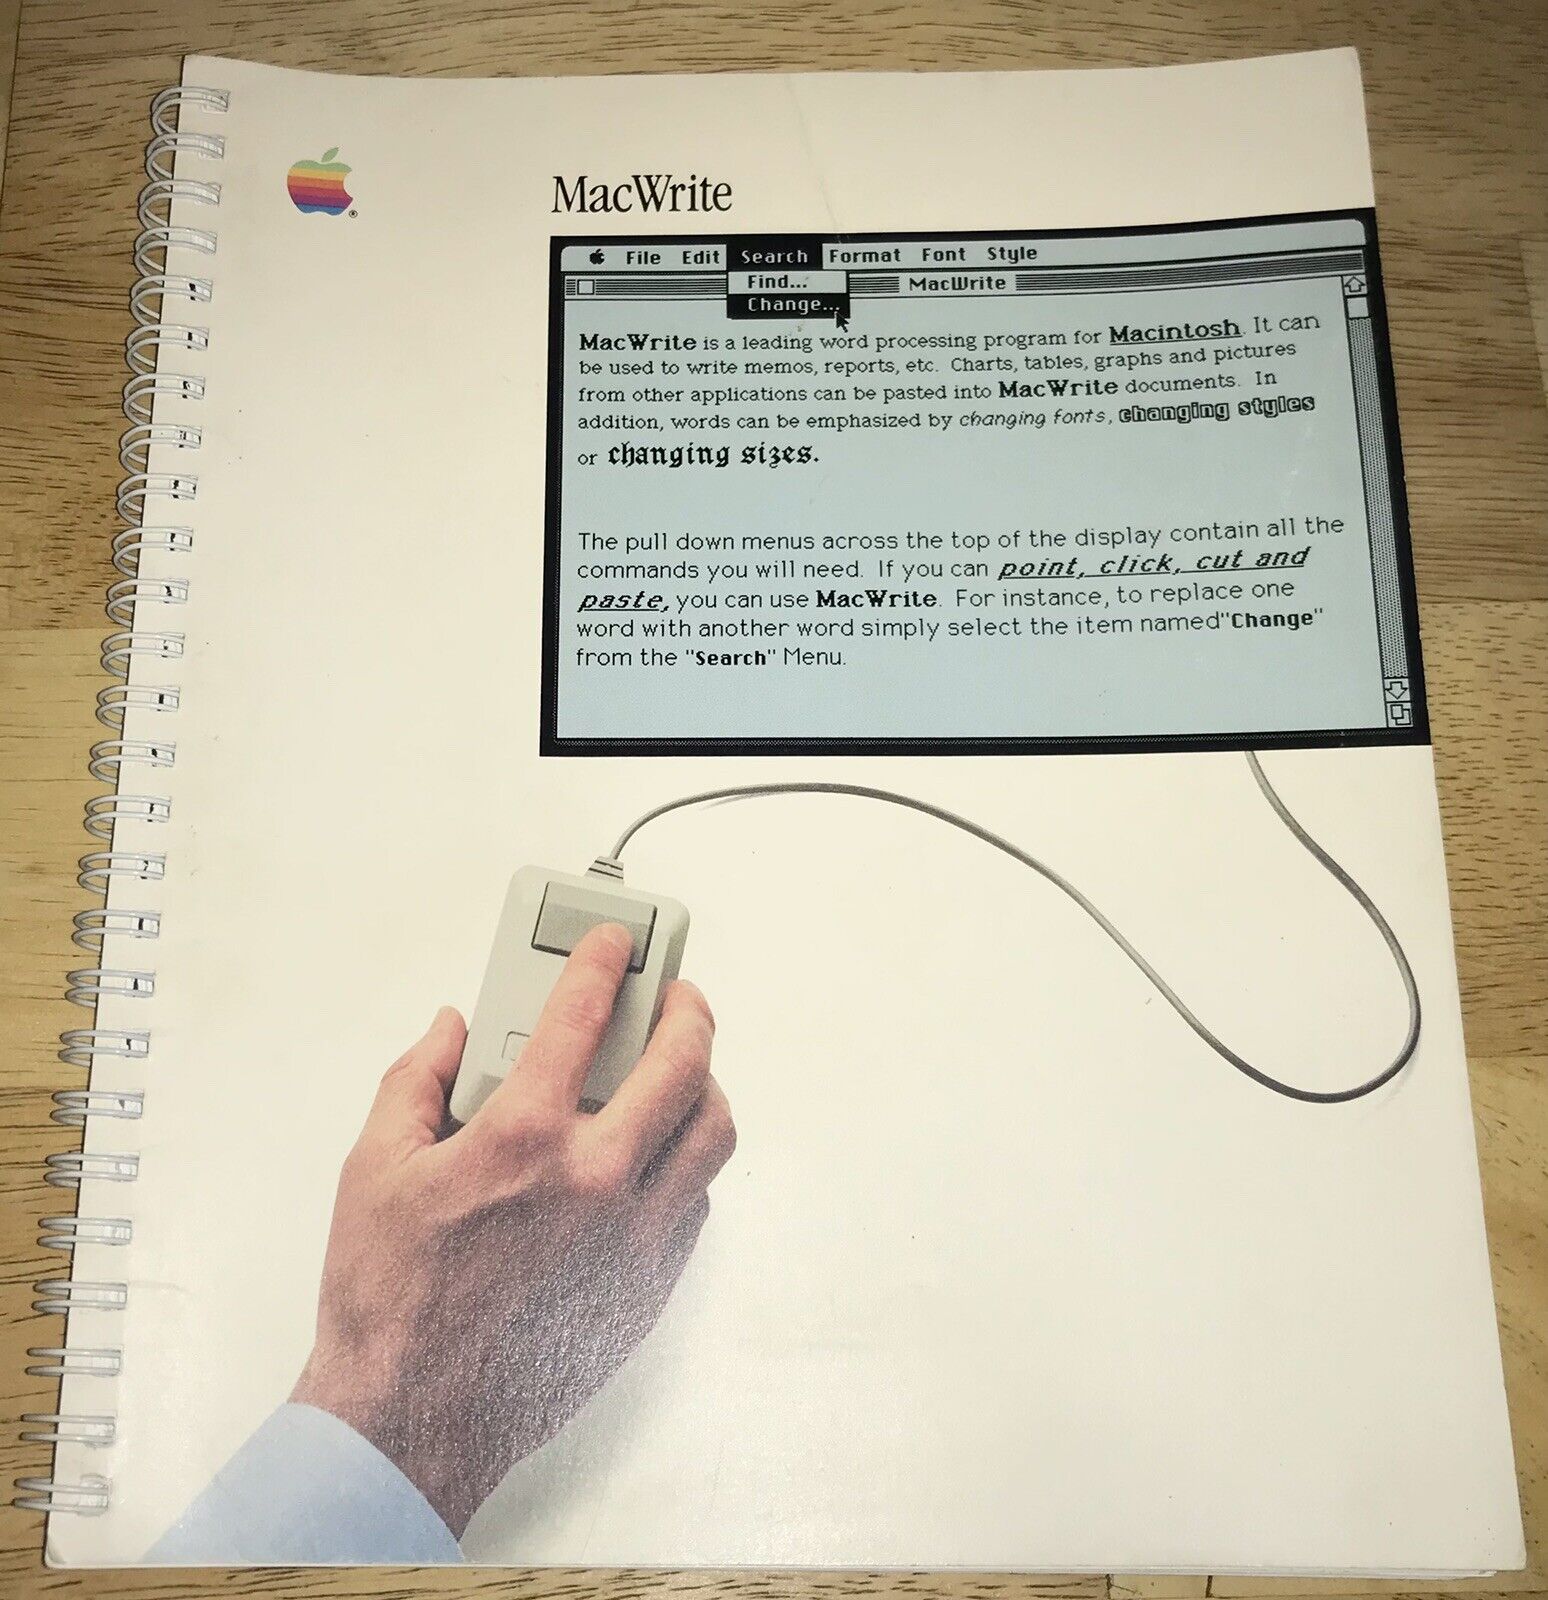 1984 MACWRITE User Guide MANUAL Version C Original Macintosh 128K M0001 Mac 512K